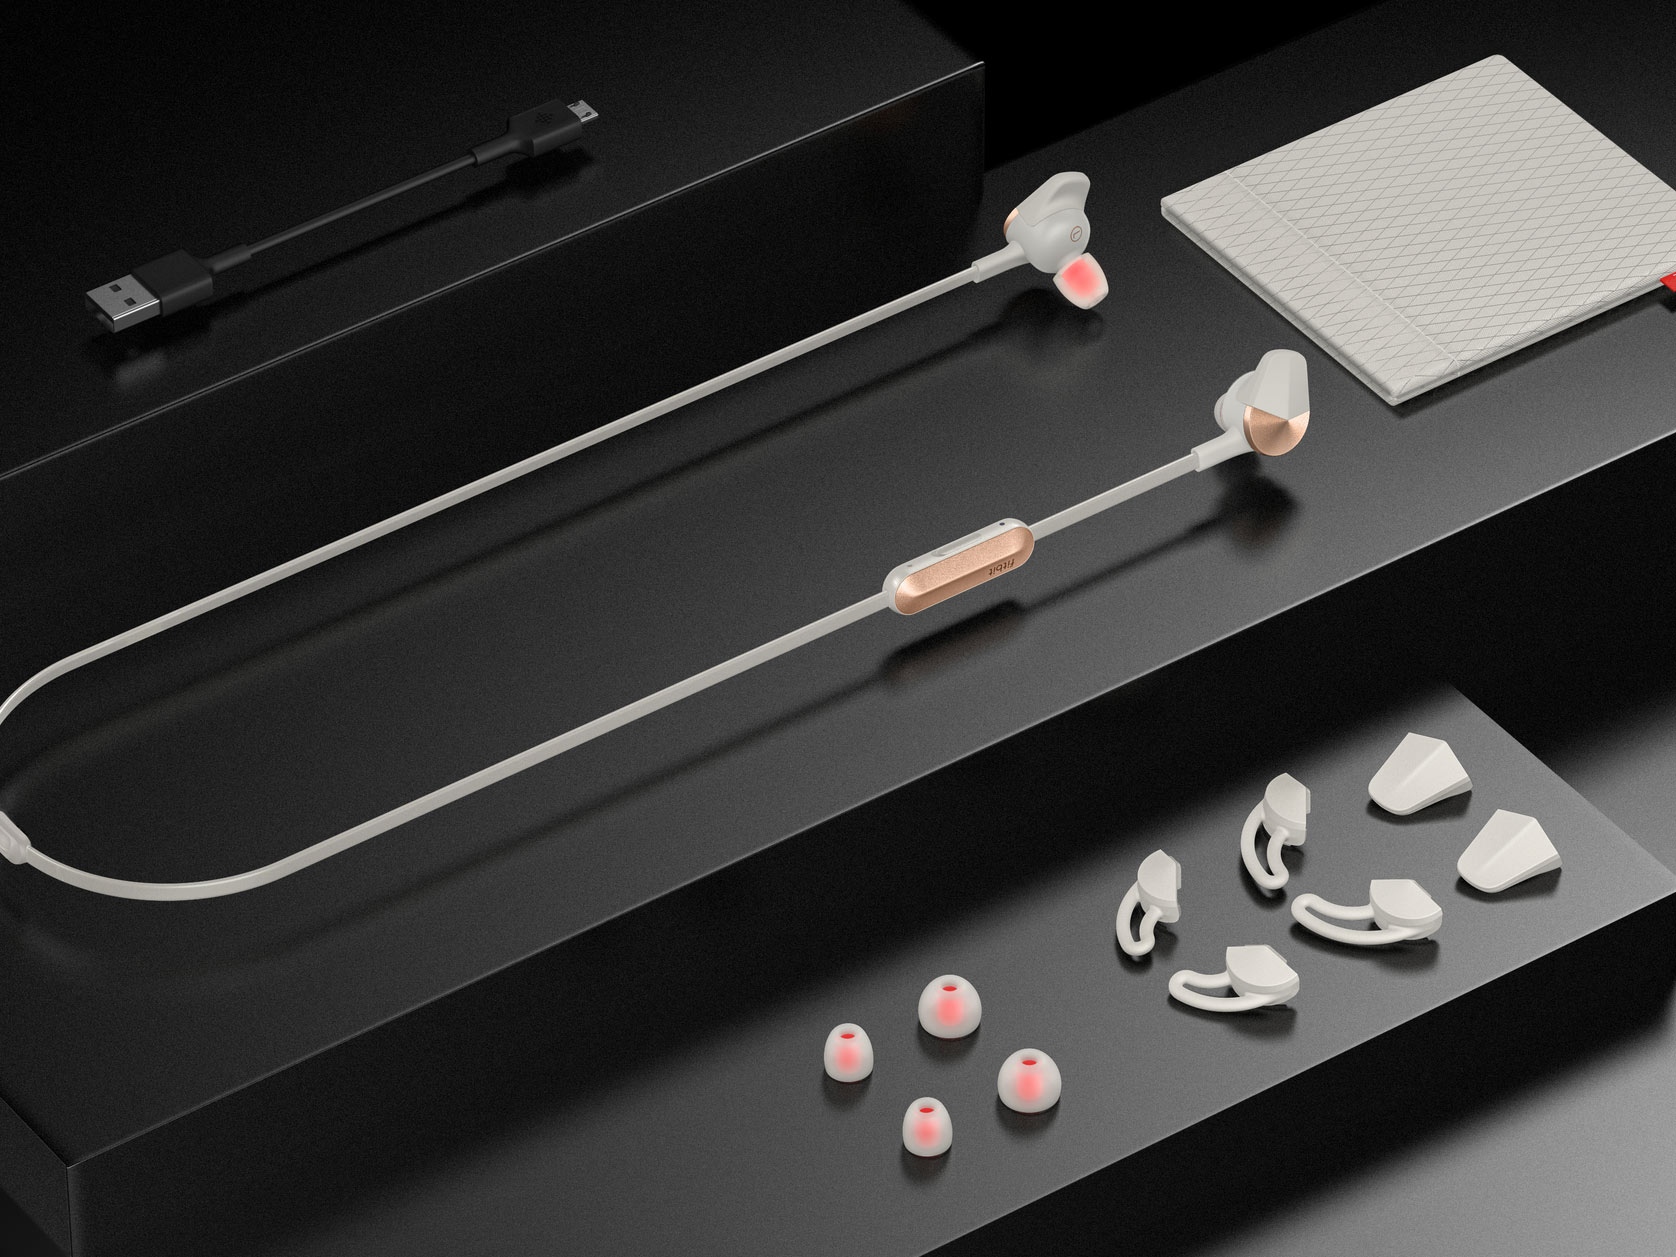 Fitbit Flyer headphones in Lunar Gray